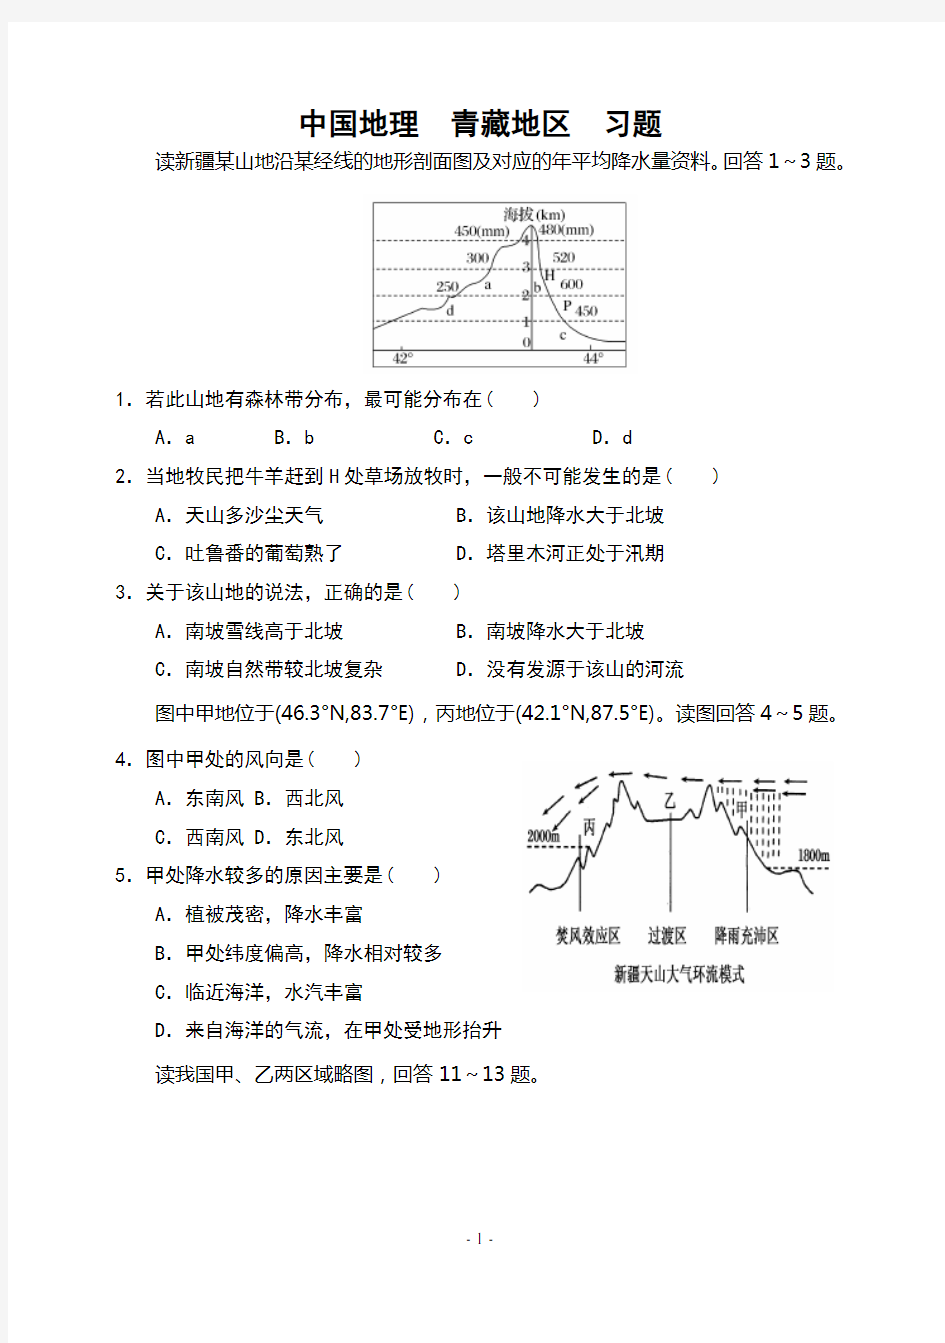 (完整版)中国地理青藏地区习题